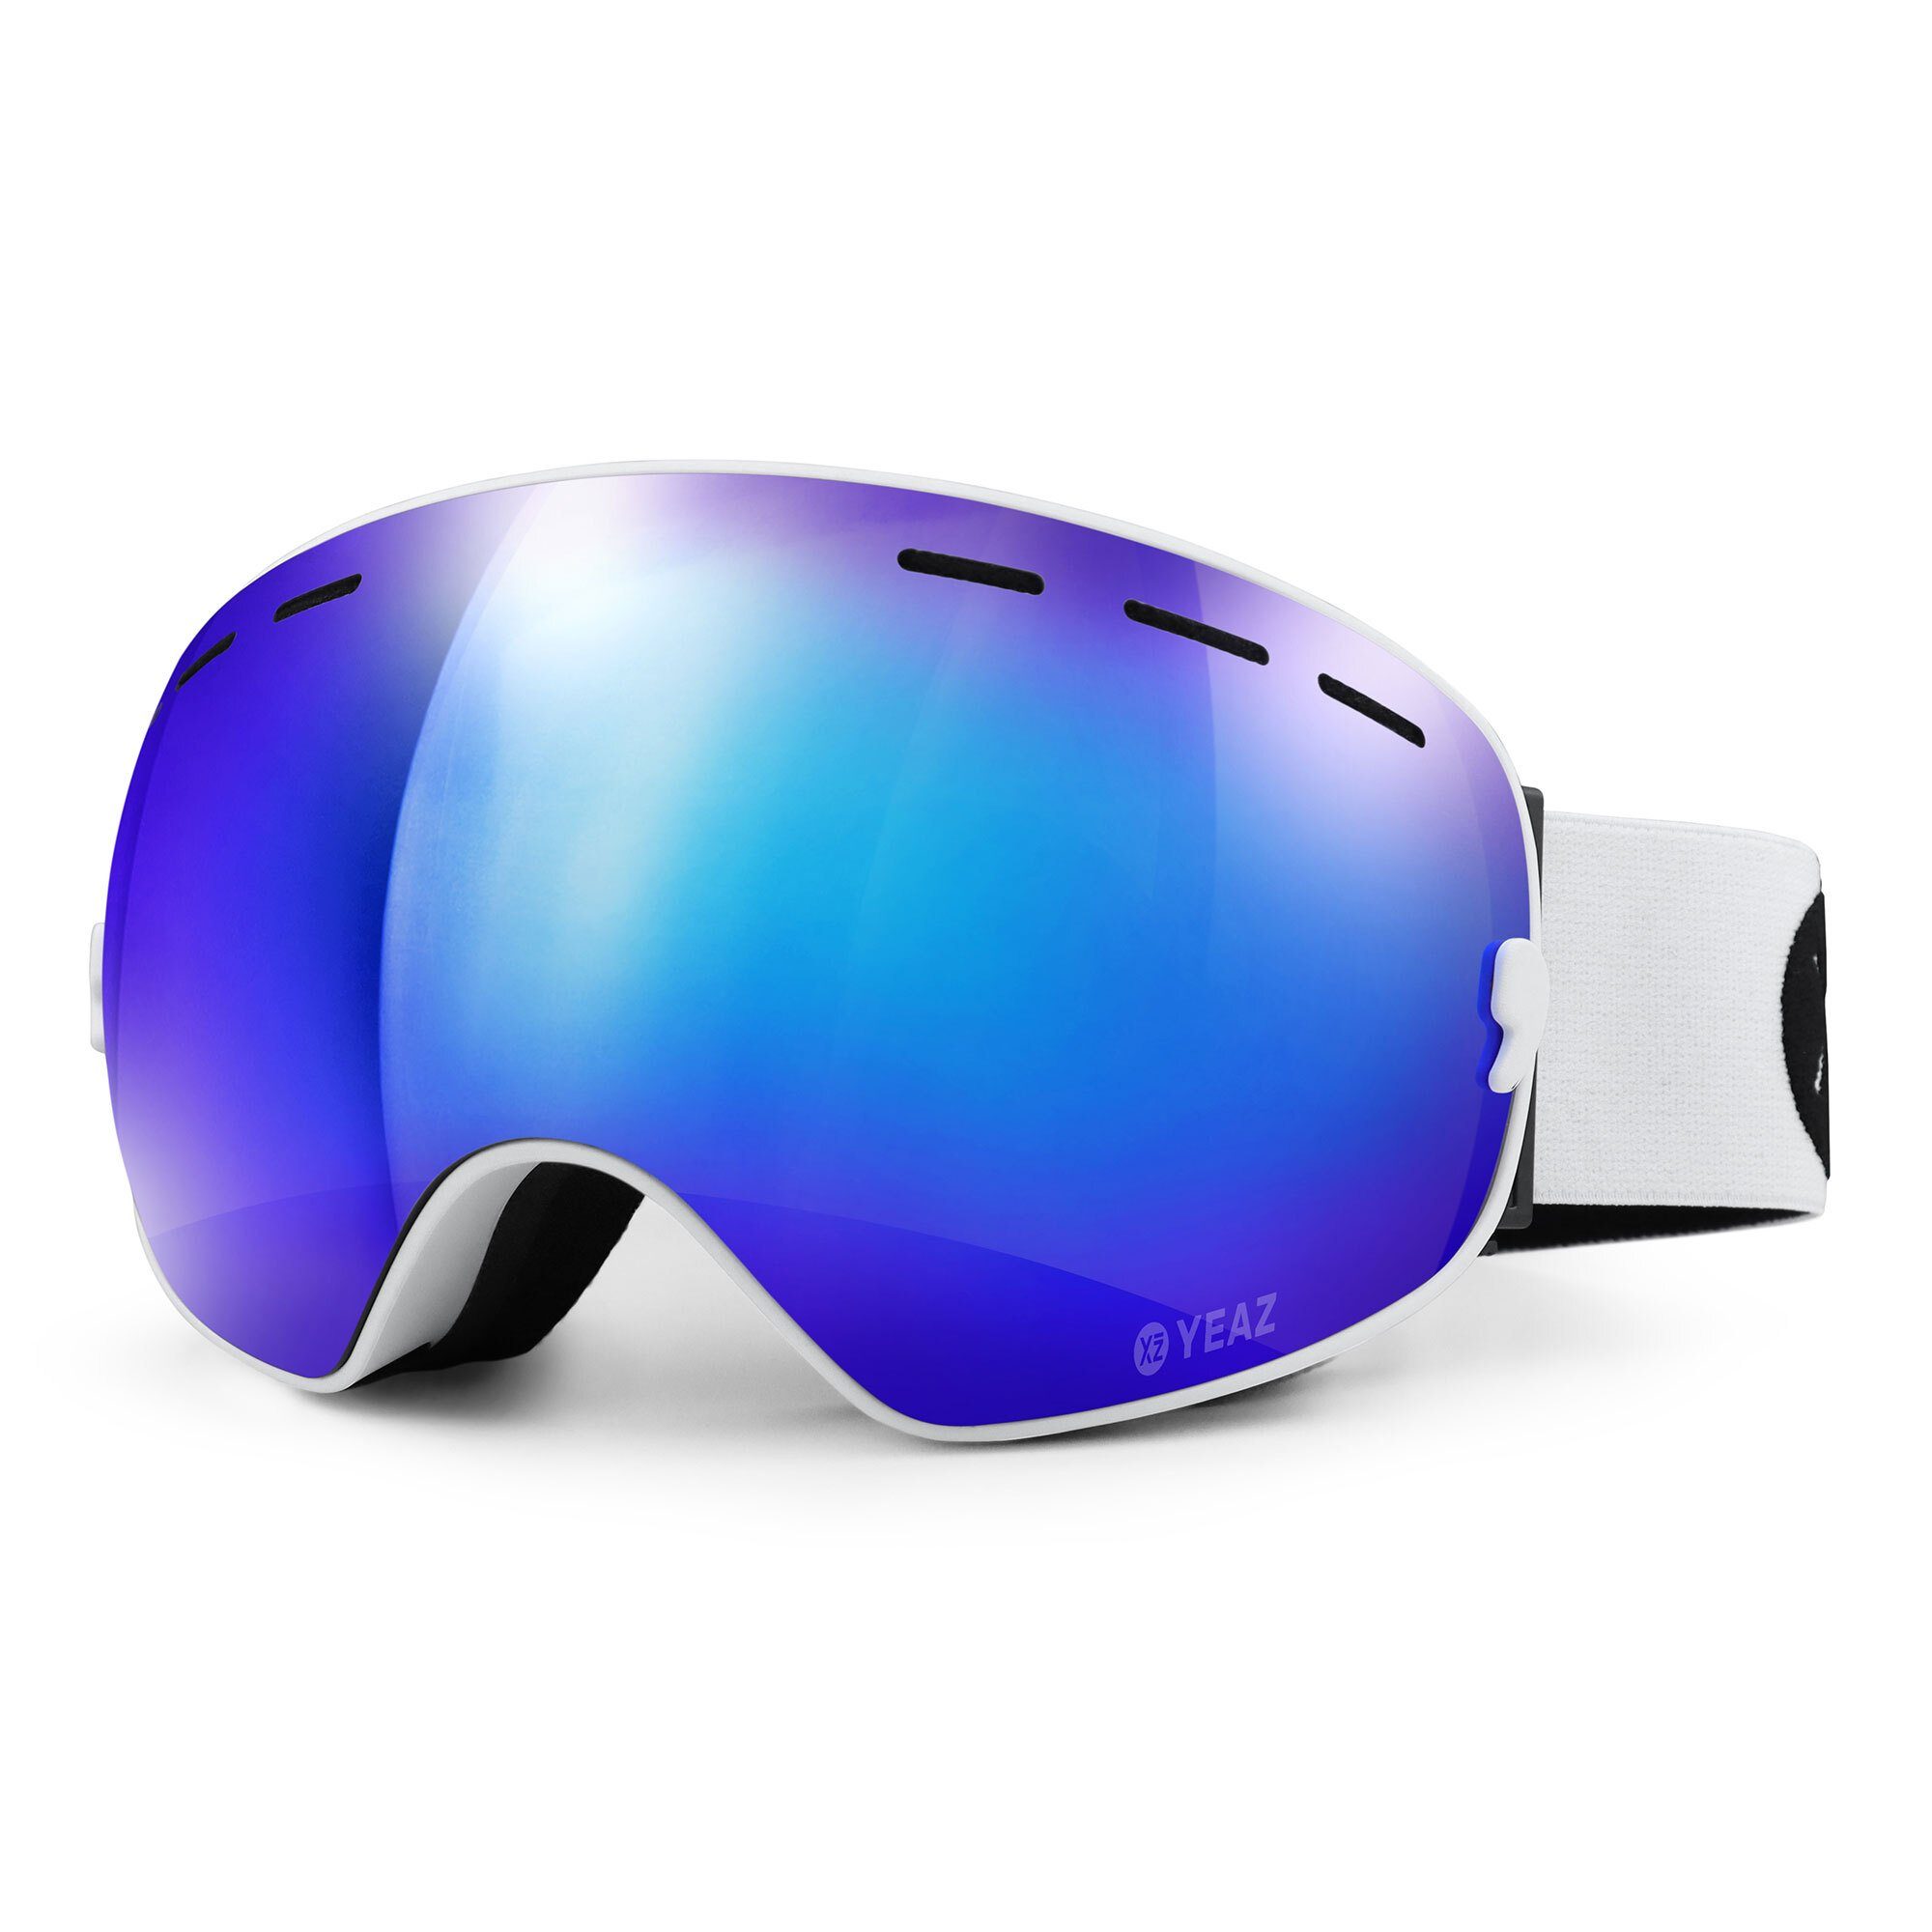 Skibrille verspiegelt, YEAZ für ski- Jugendliche Erwachsene snowboardbrille Premium-Ski- Snowboardbrille und XTRM-SUMMIT und